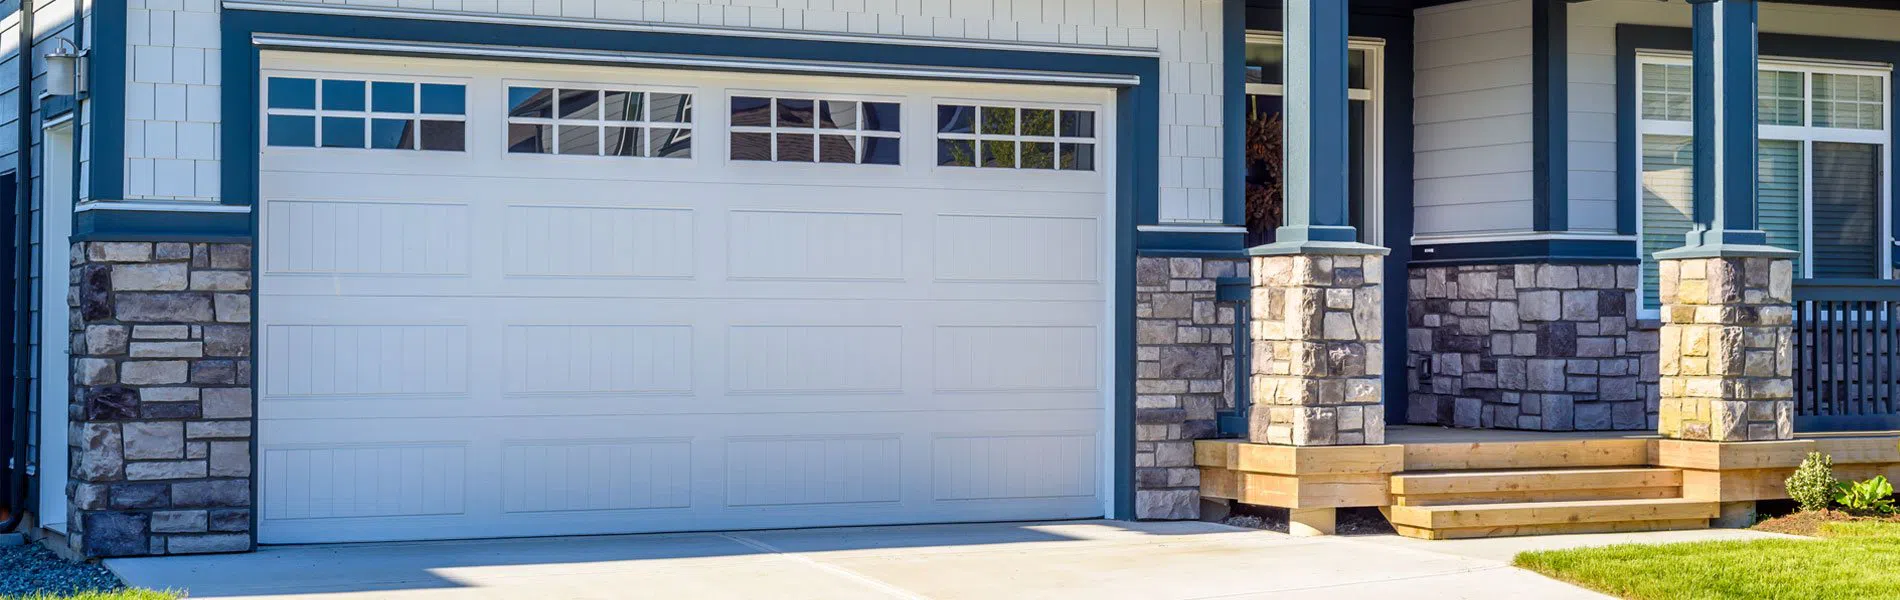 Neighborhood Garage Door | Expert Garage Door Company | Woodbridge, VA | 571-429-4323